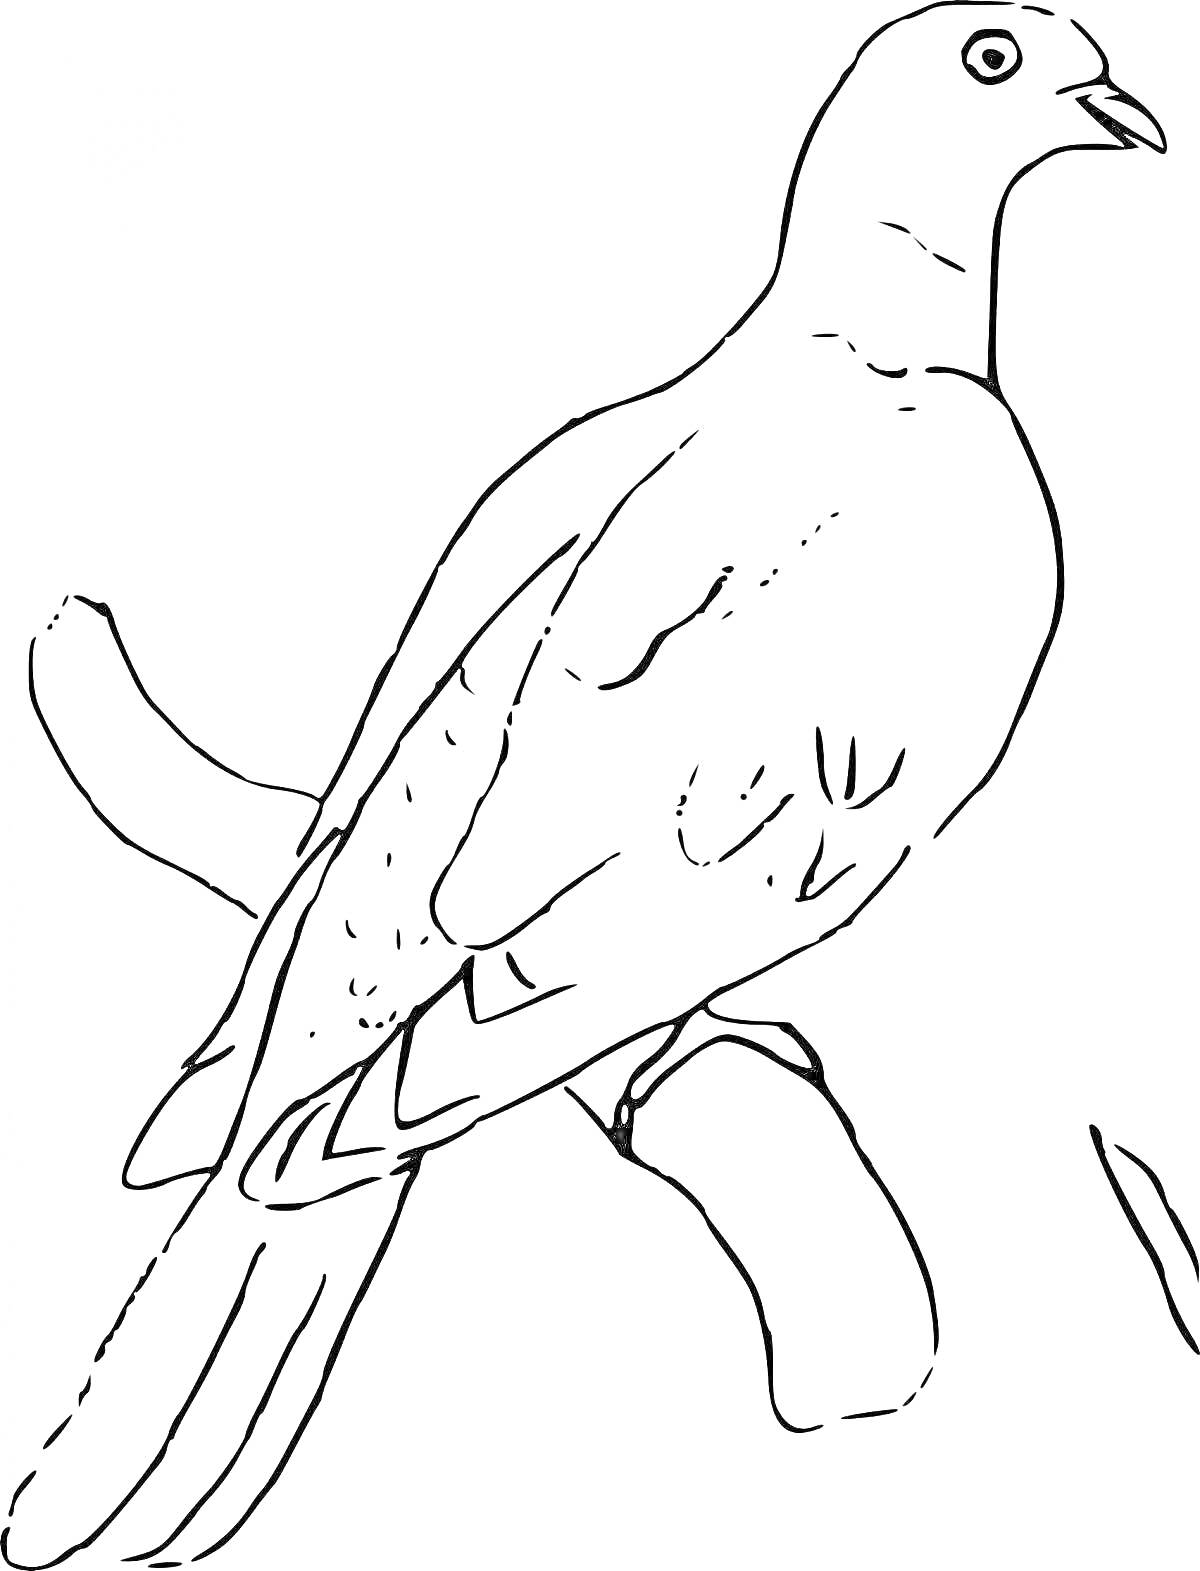 Раскраска Странствующий голубь на ветке, направо смотрящий, с одним крылом видимым